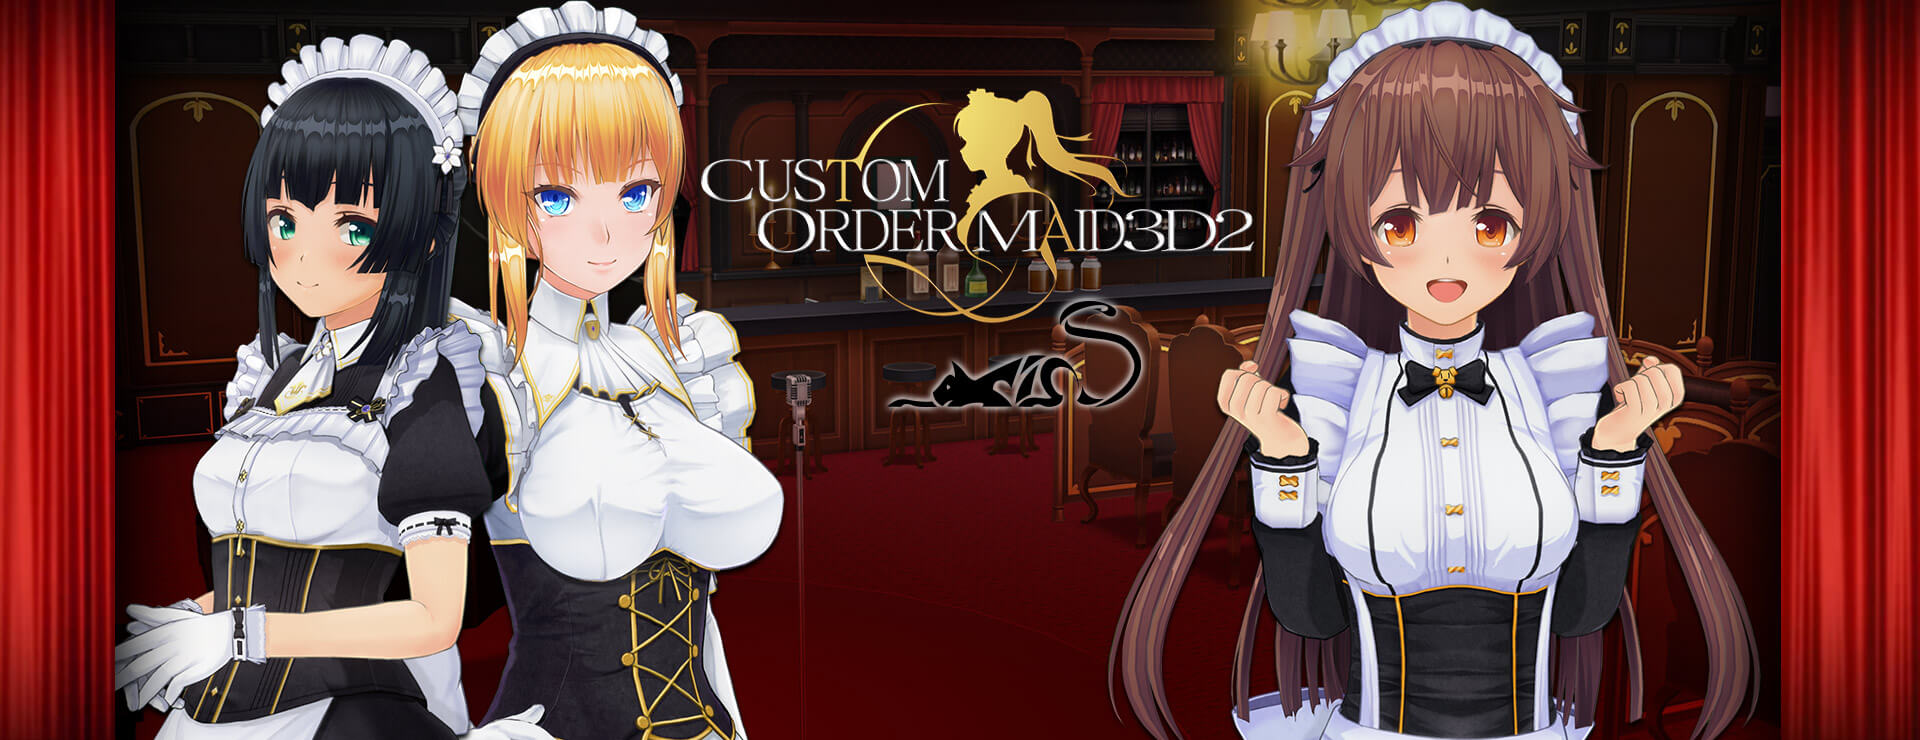 Custom Order Maid 3D2 GP 01 (DLC) - Przygodowa akcji Gra